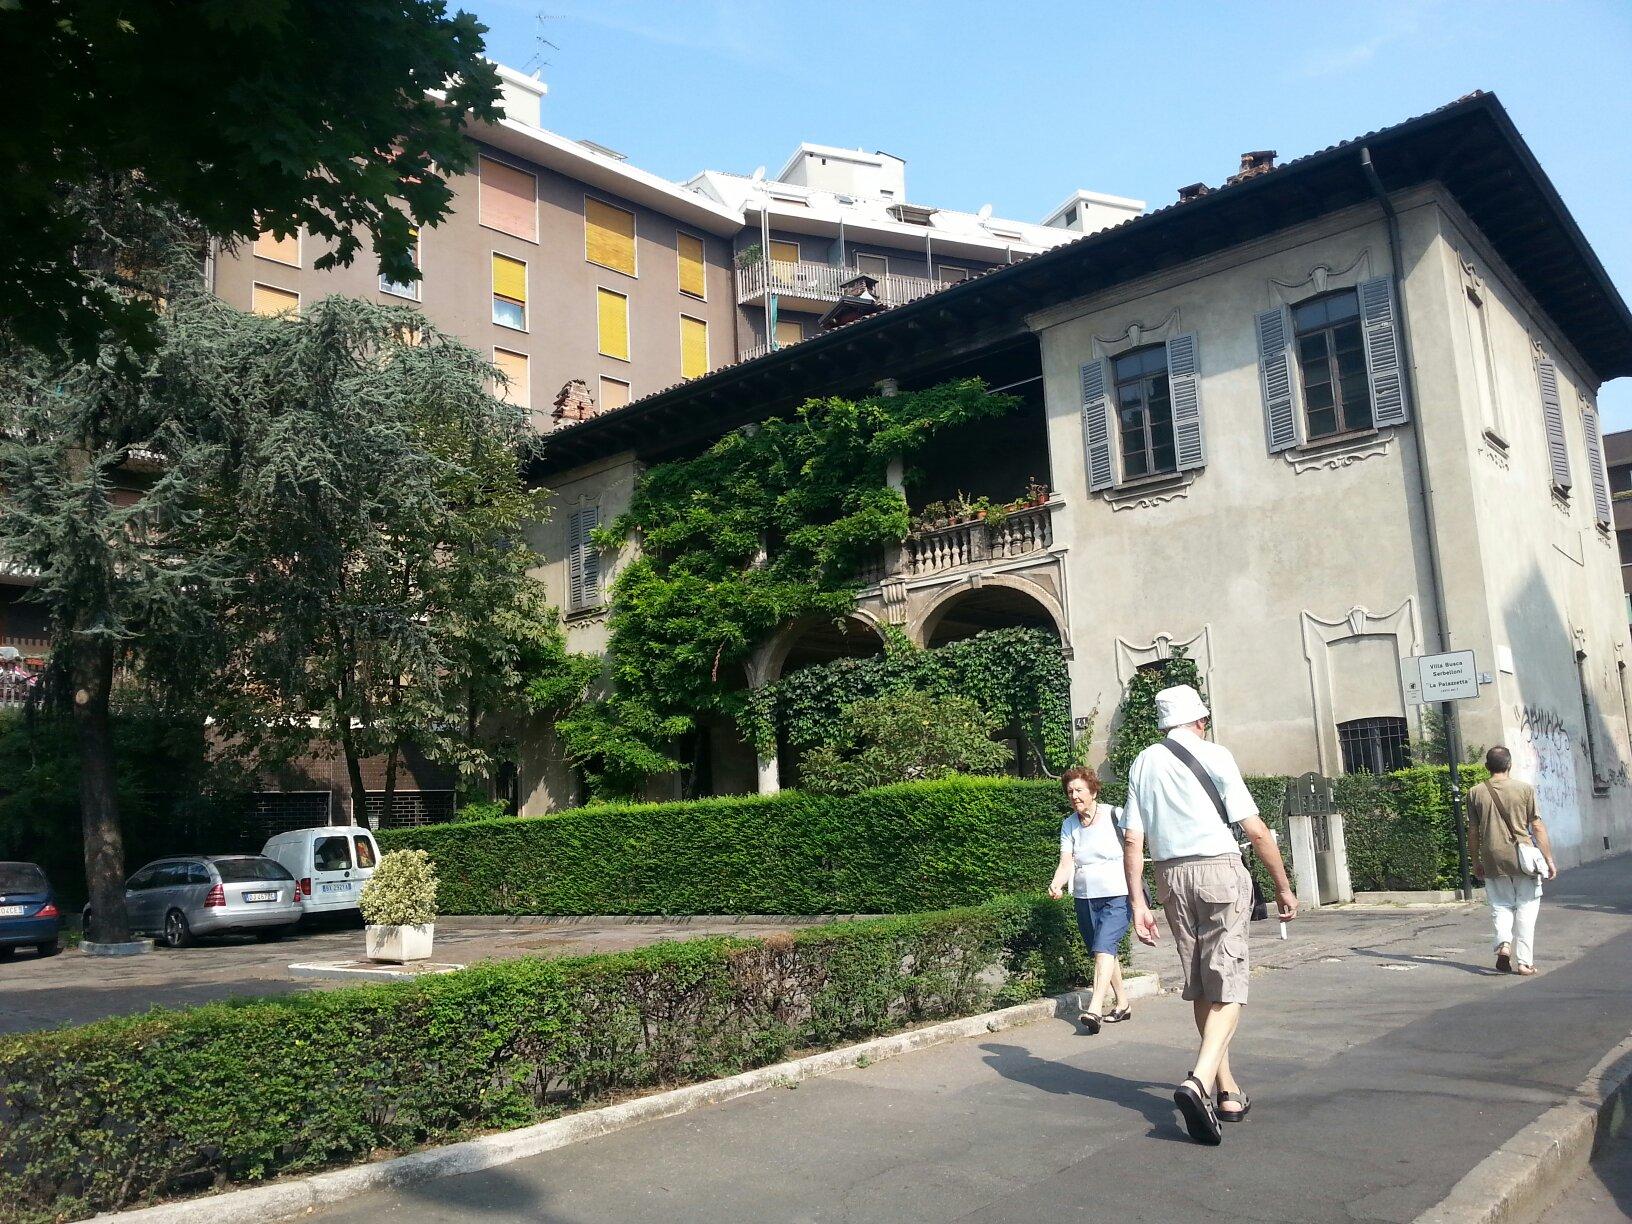 Villa Busca Serbelloni